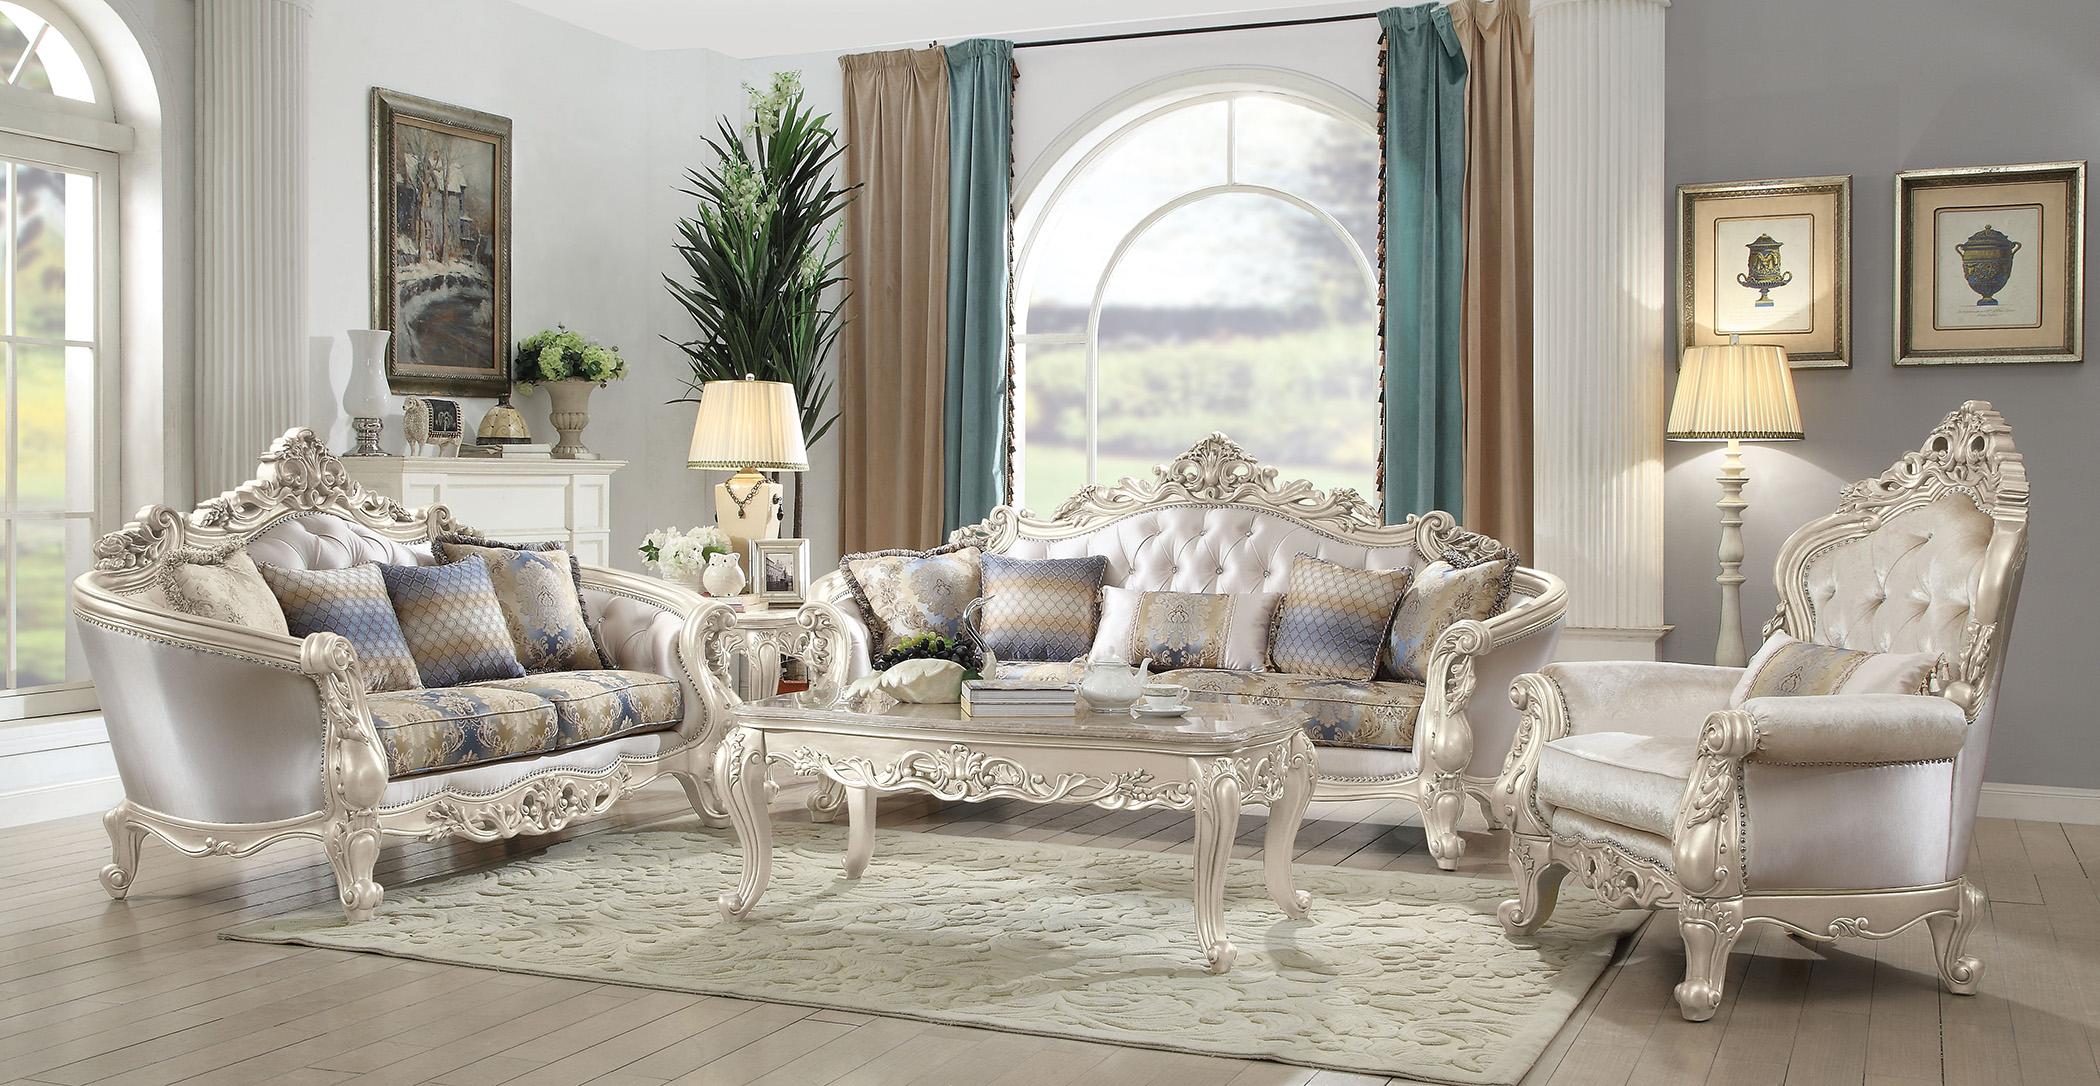 

    
Luxury Sofa Set 3 Pcs Gorsedd-52440 Antique White Cream Fabric Acme Traditional
